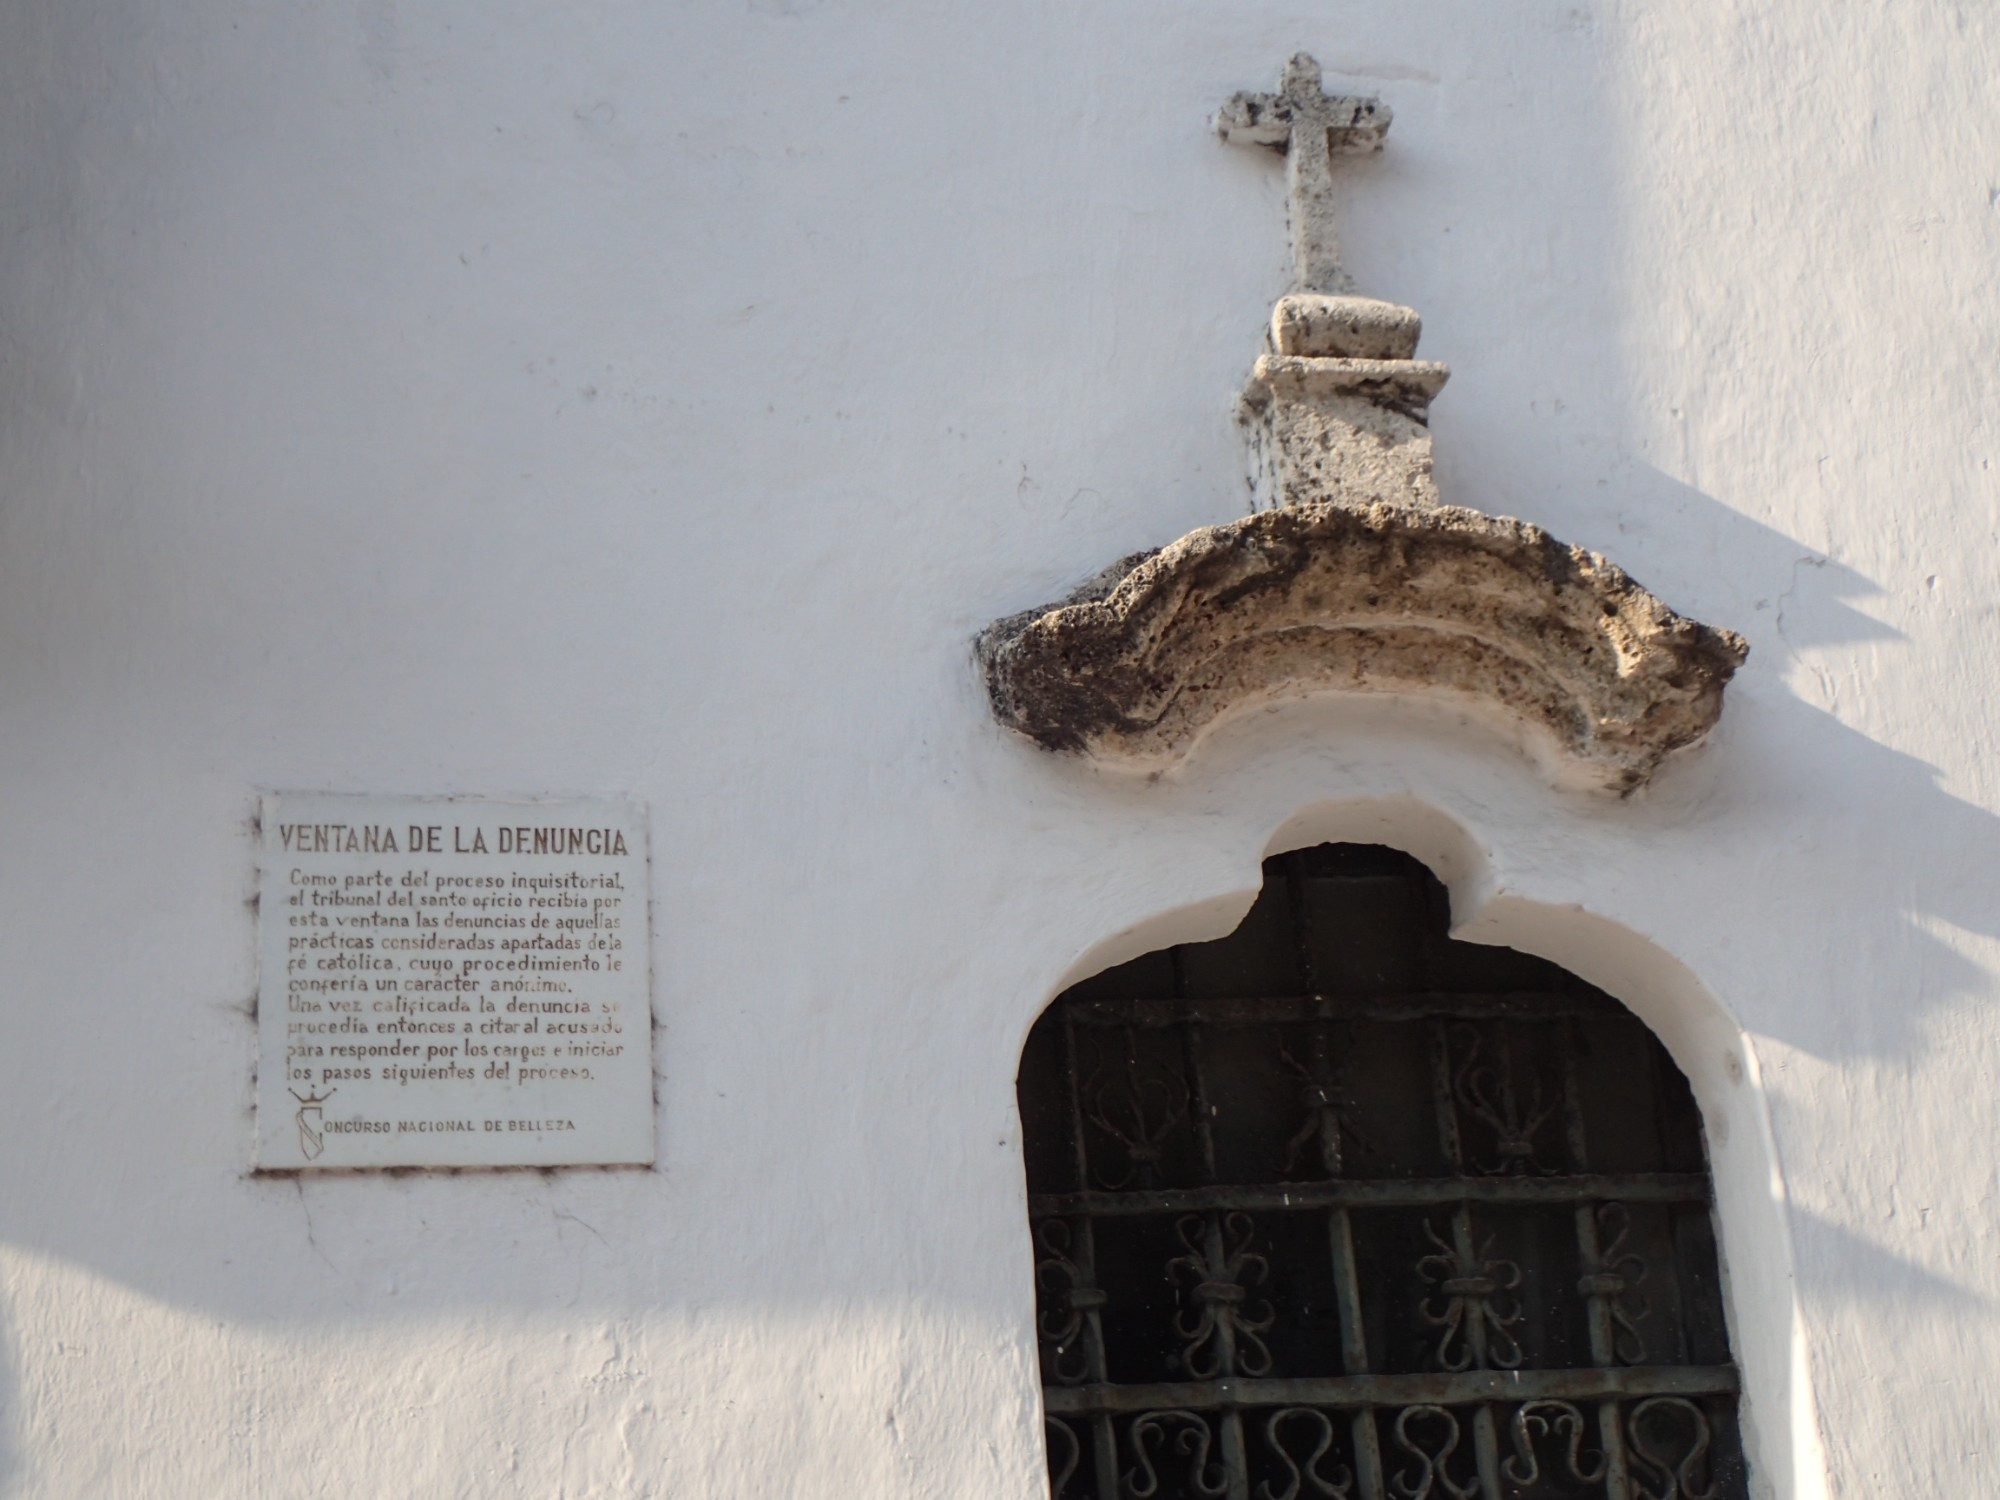 Ventana de la Denuncia - Inquisition Monument, Колумбия